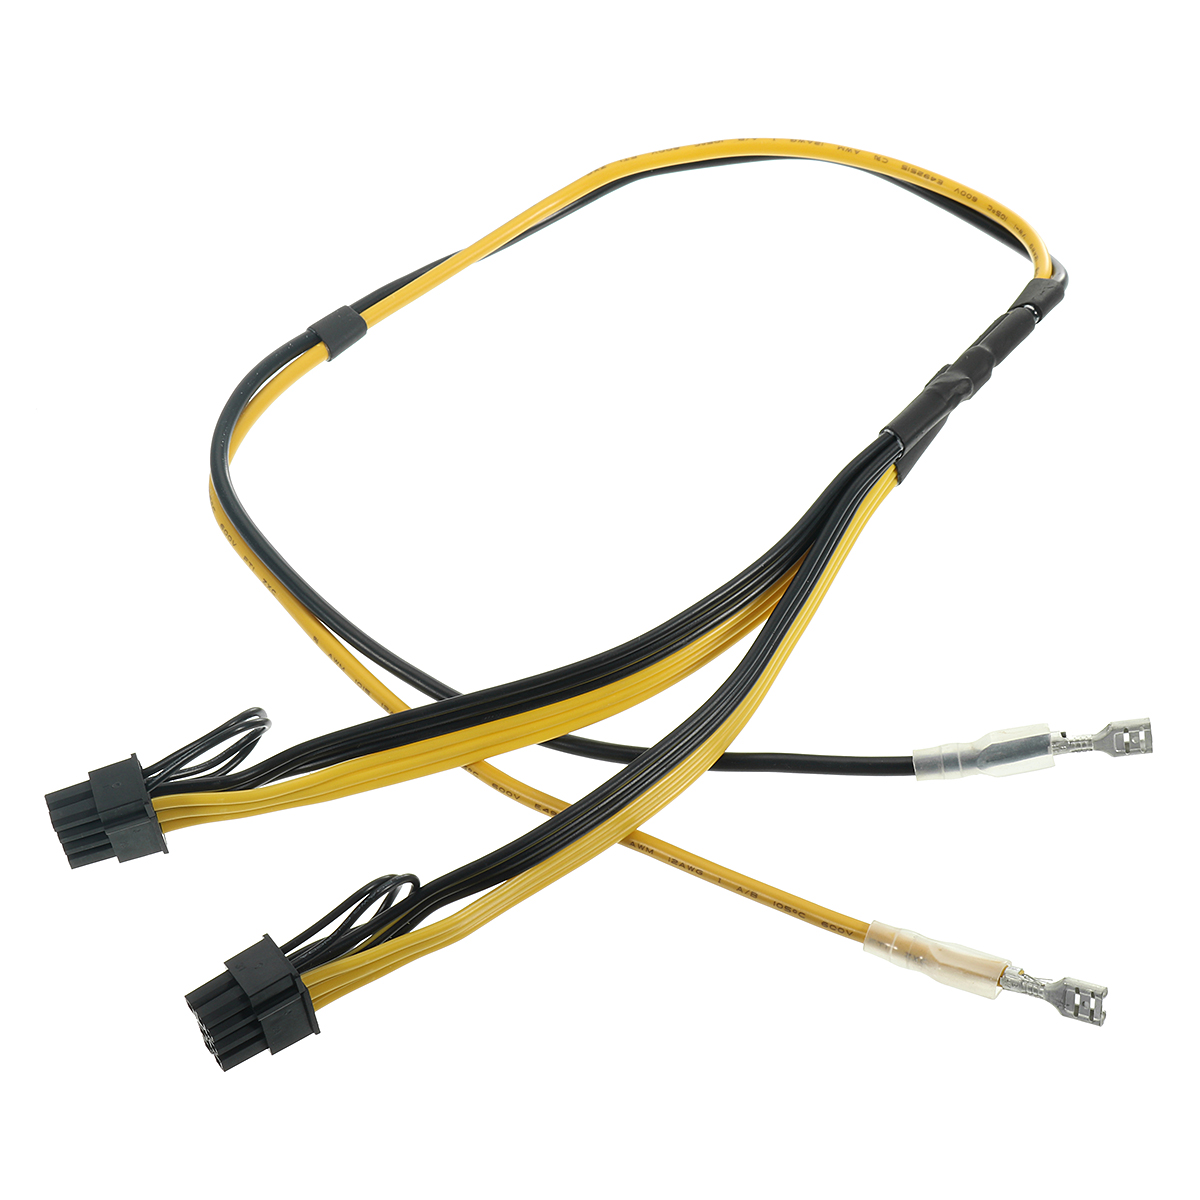 

Dual PCIe 8pin Шнур питания 6 + 2pin DIY Разветвитель Кабель питания для видеокарты RIG Miner